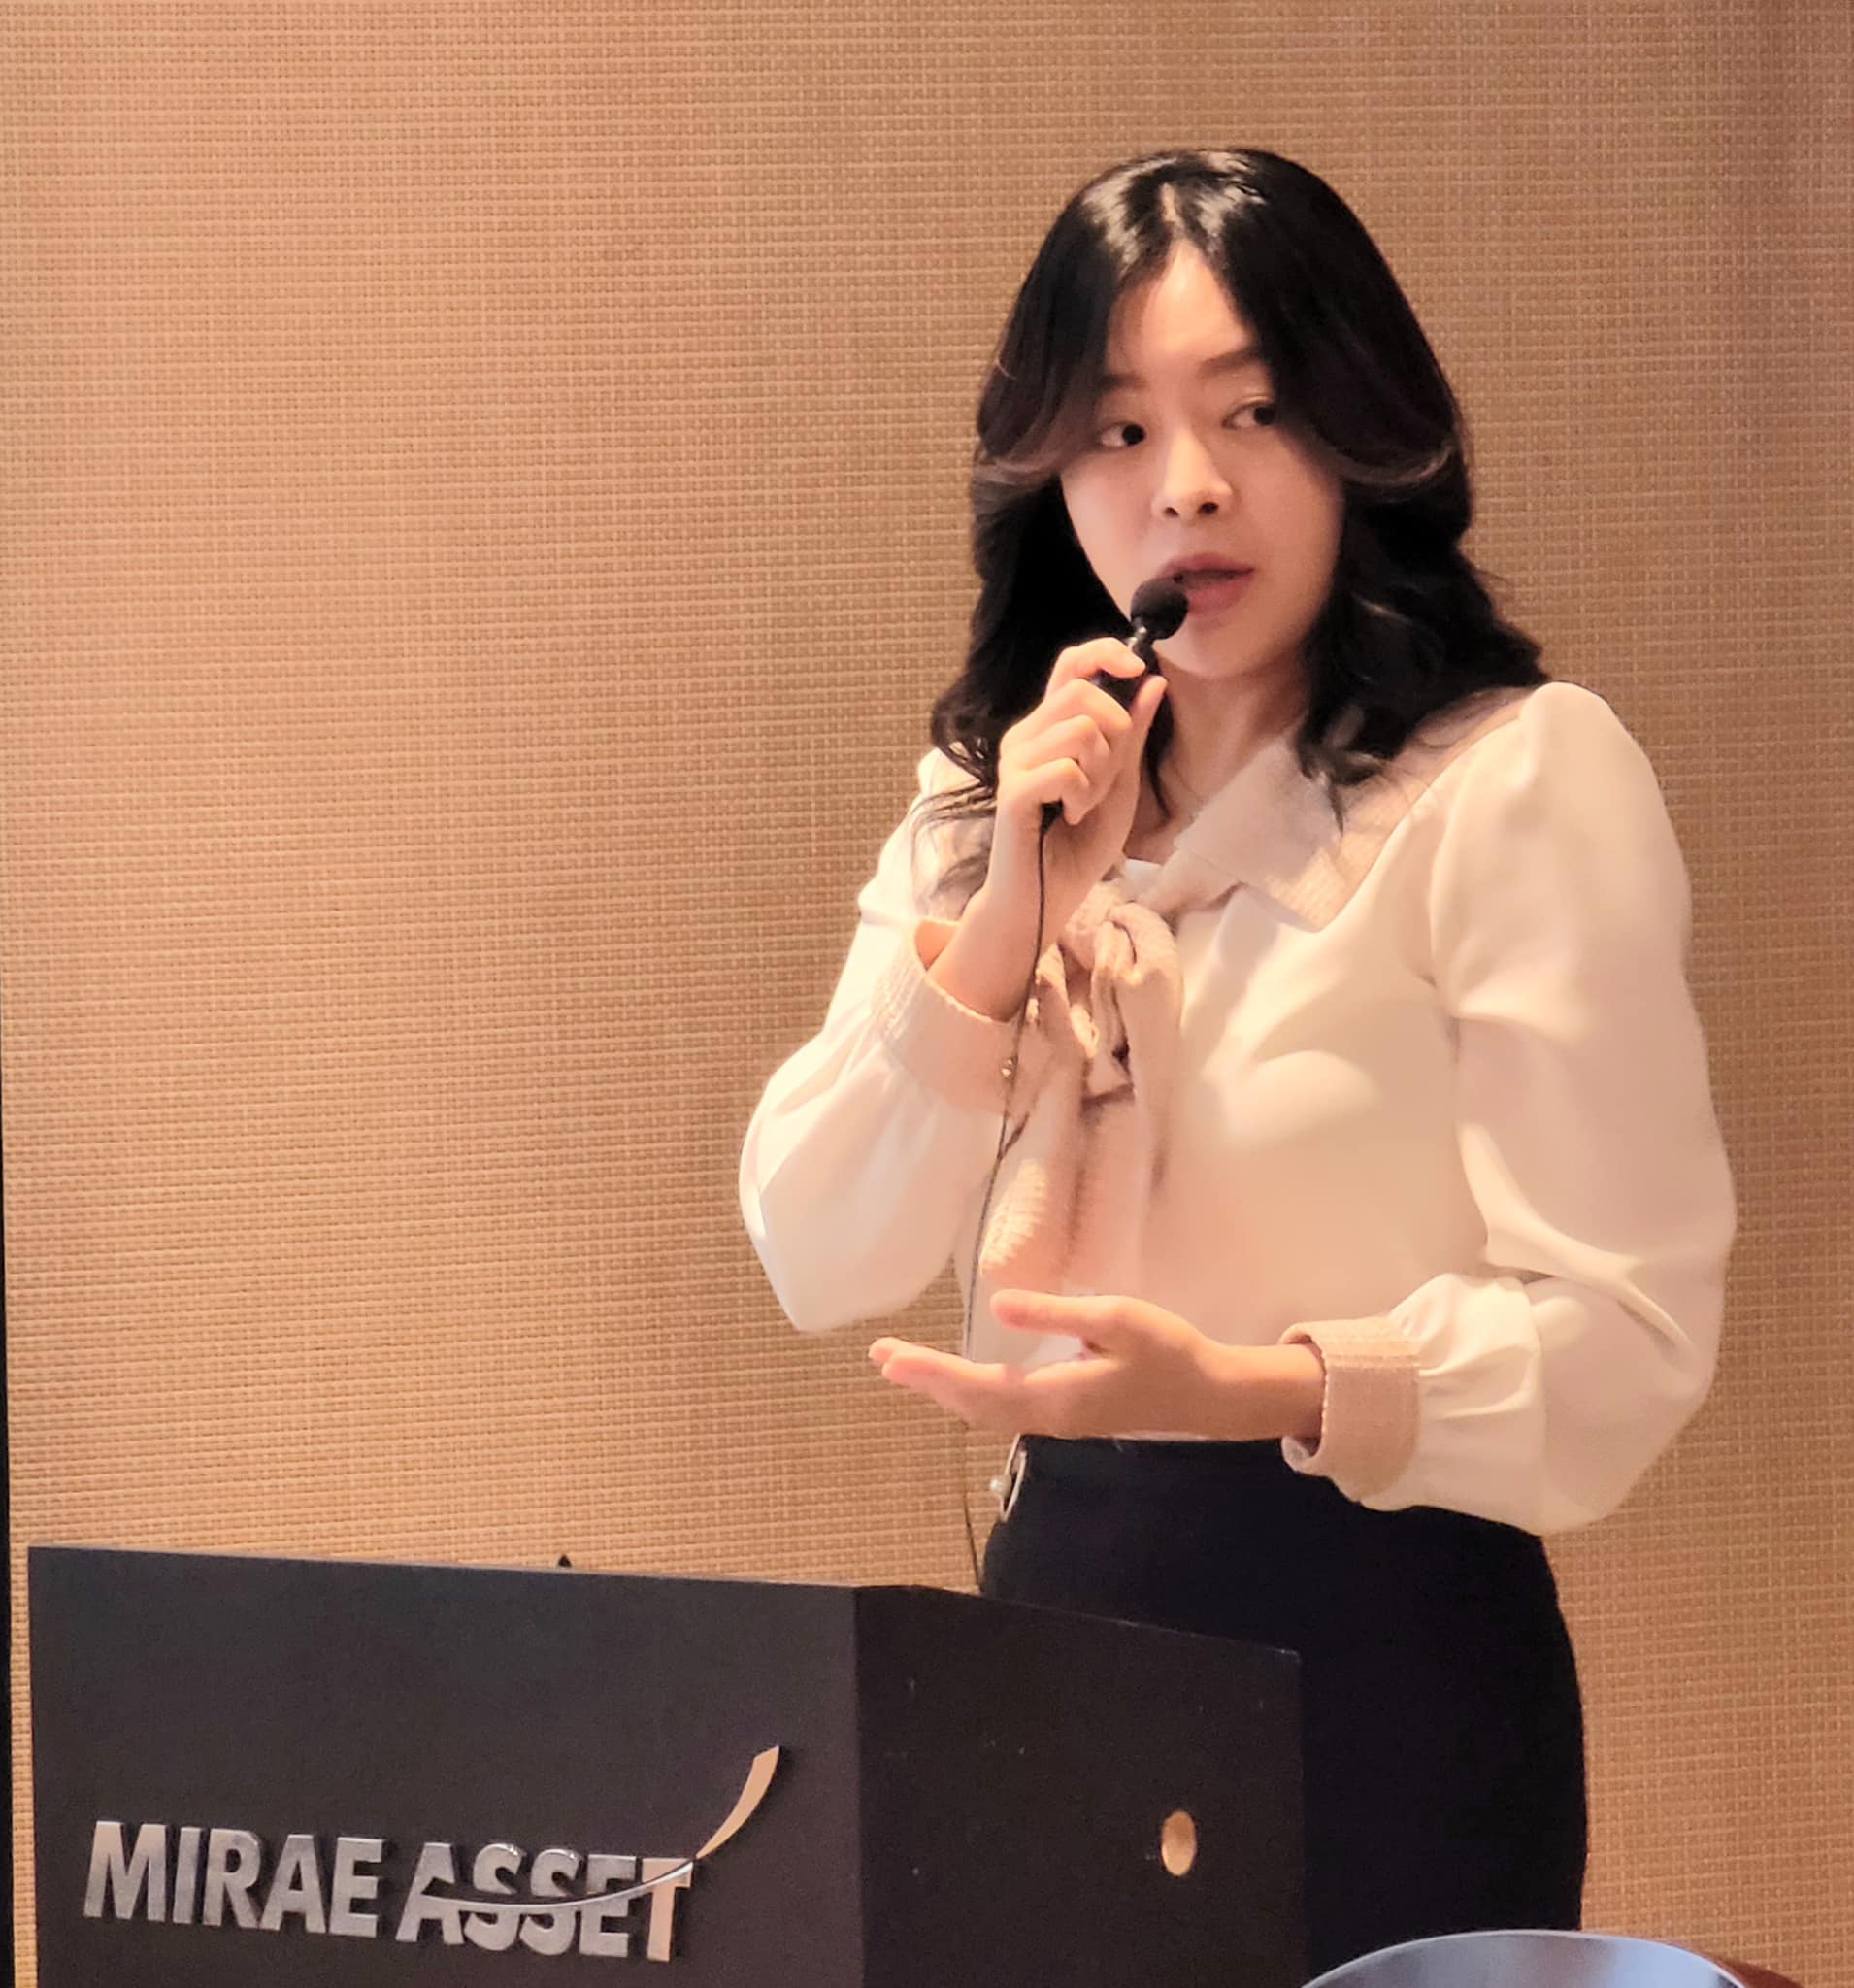 Nữ diễn viên Yeo Min Jung có màn lộ hàng gây sốc bậc nhất lịch sử thảm đỏ Kbiz bỗng thành giáo sư - Ảnh 3.